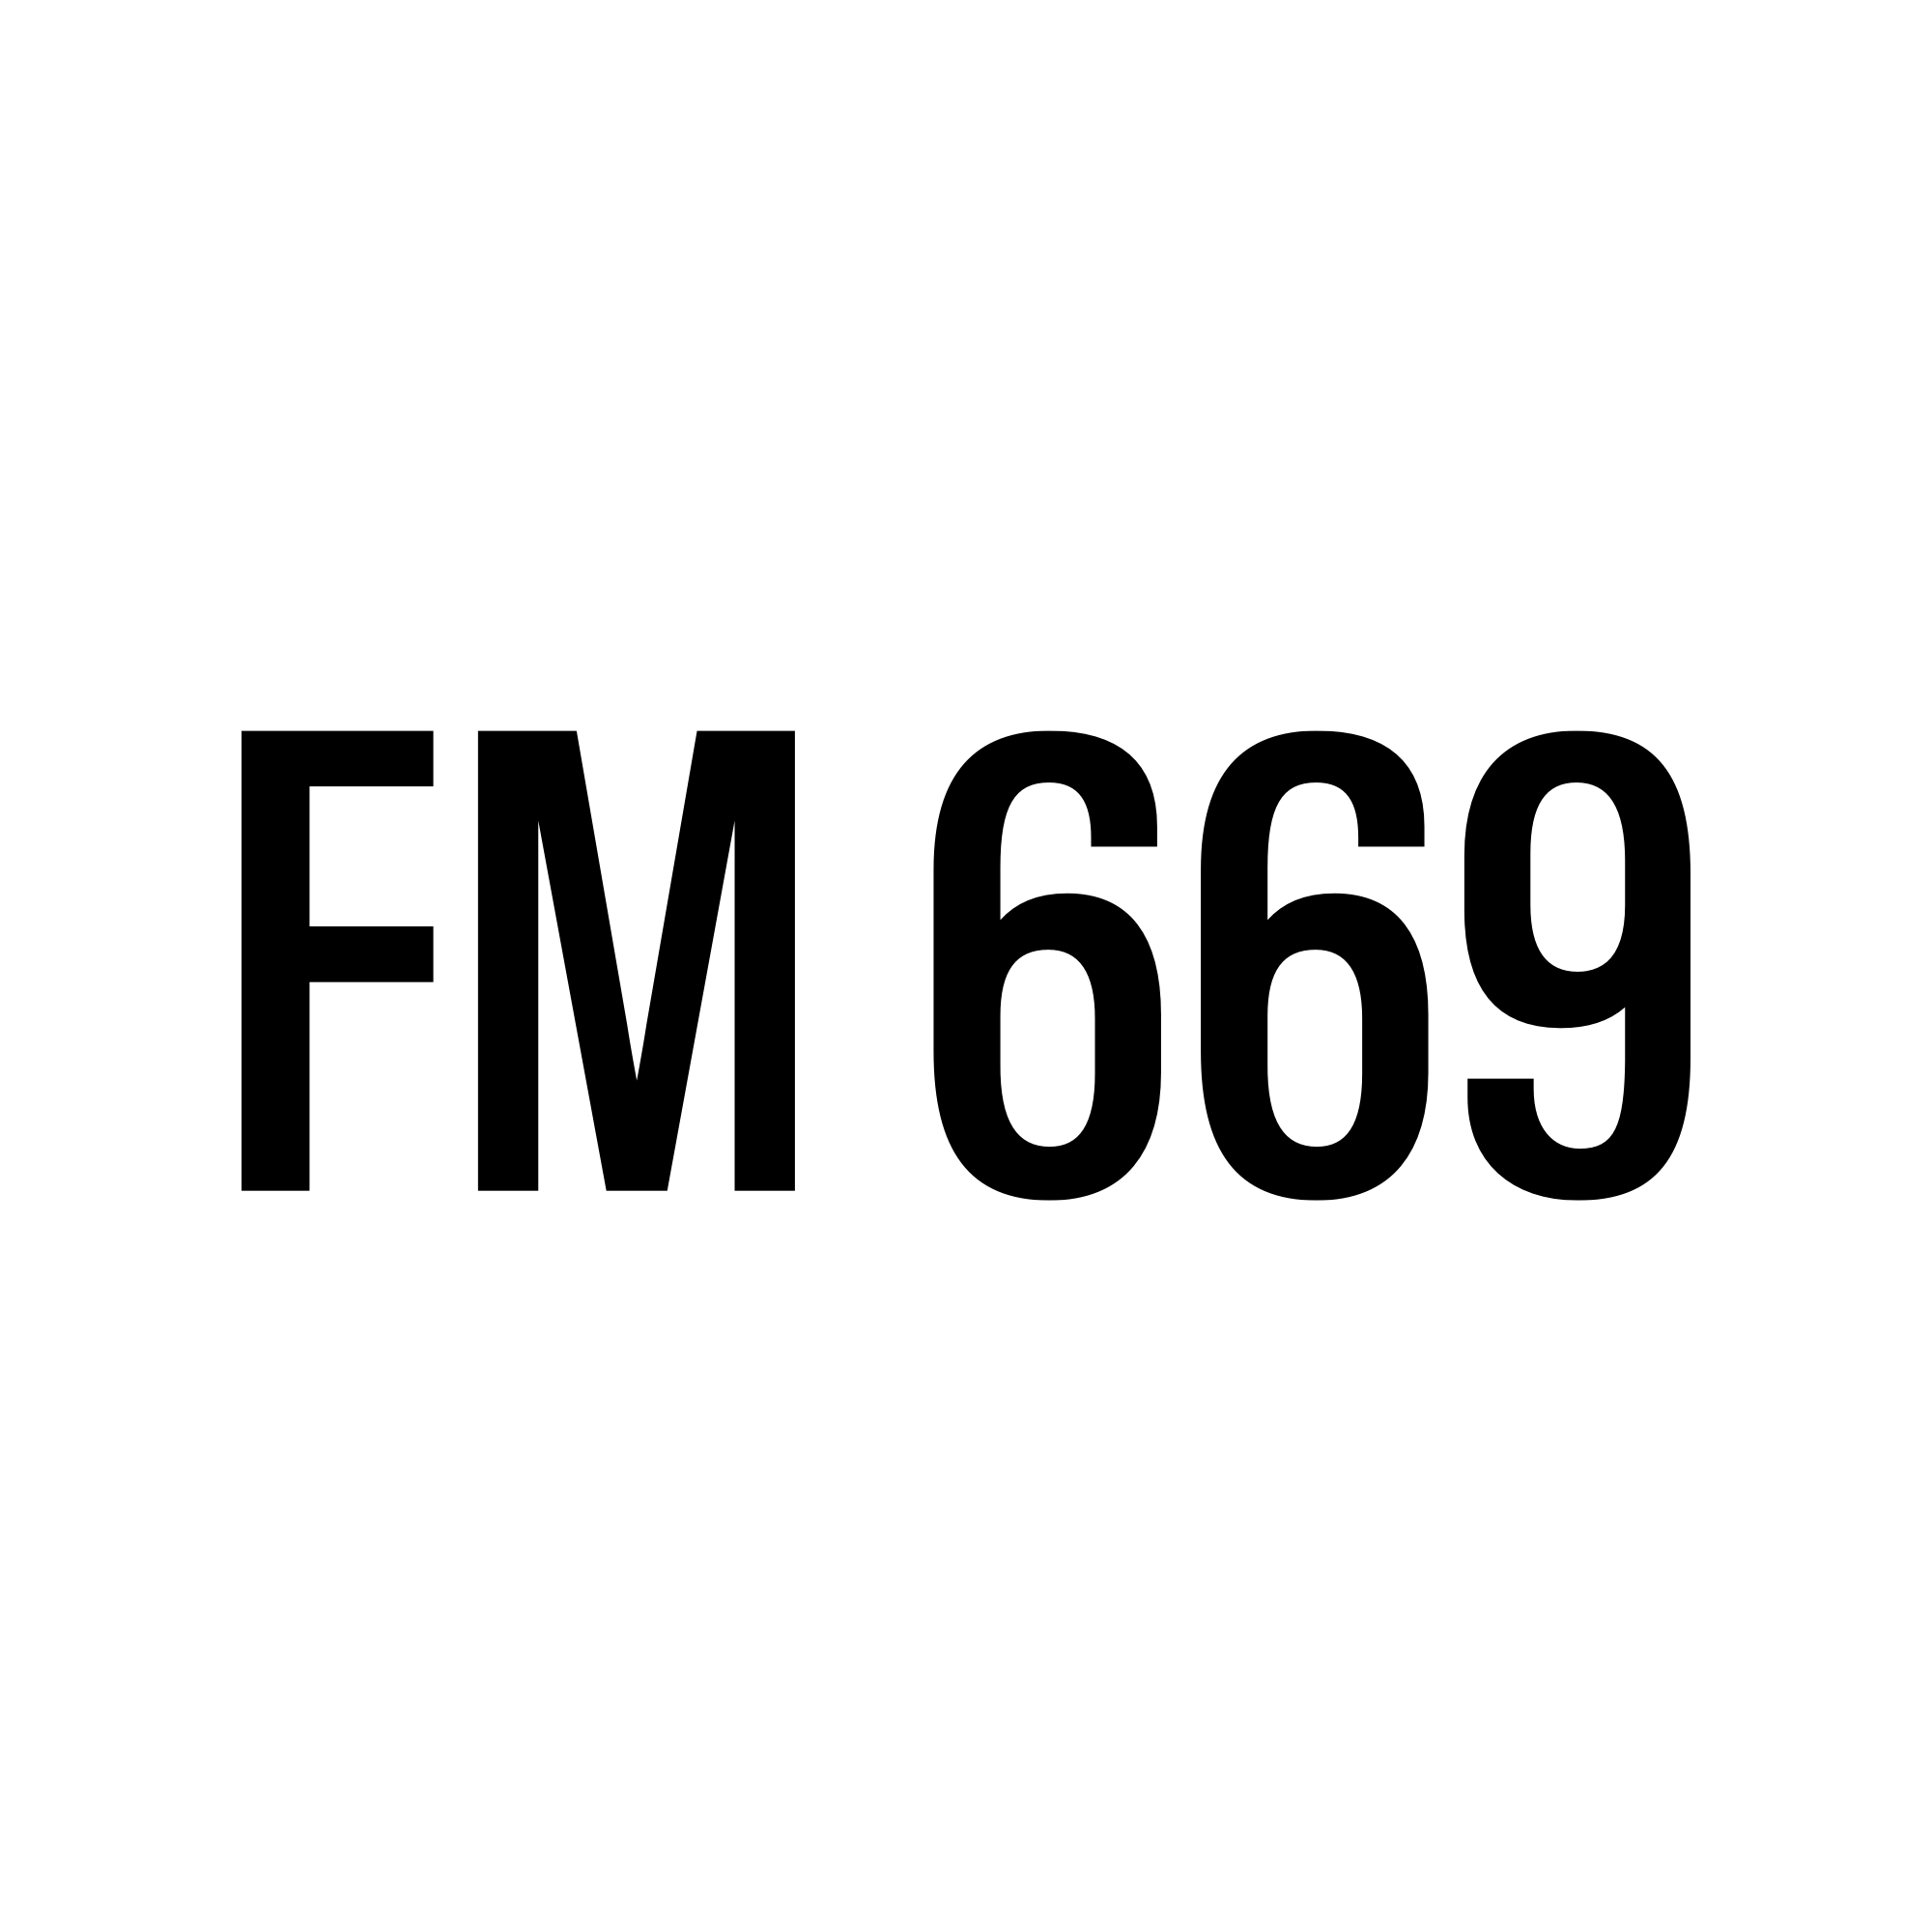 FM 669